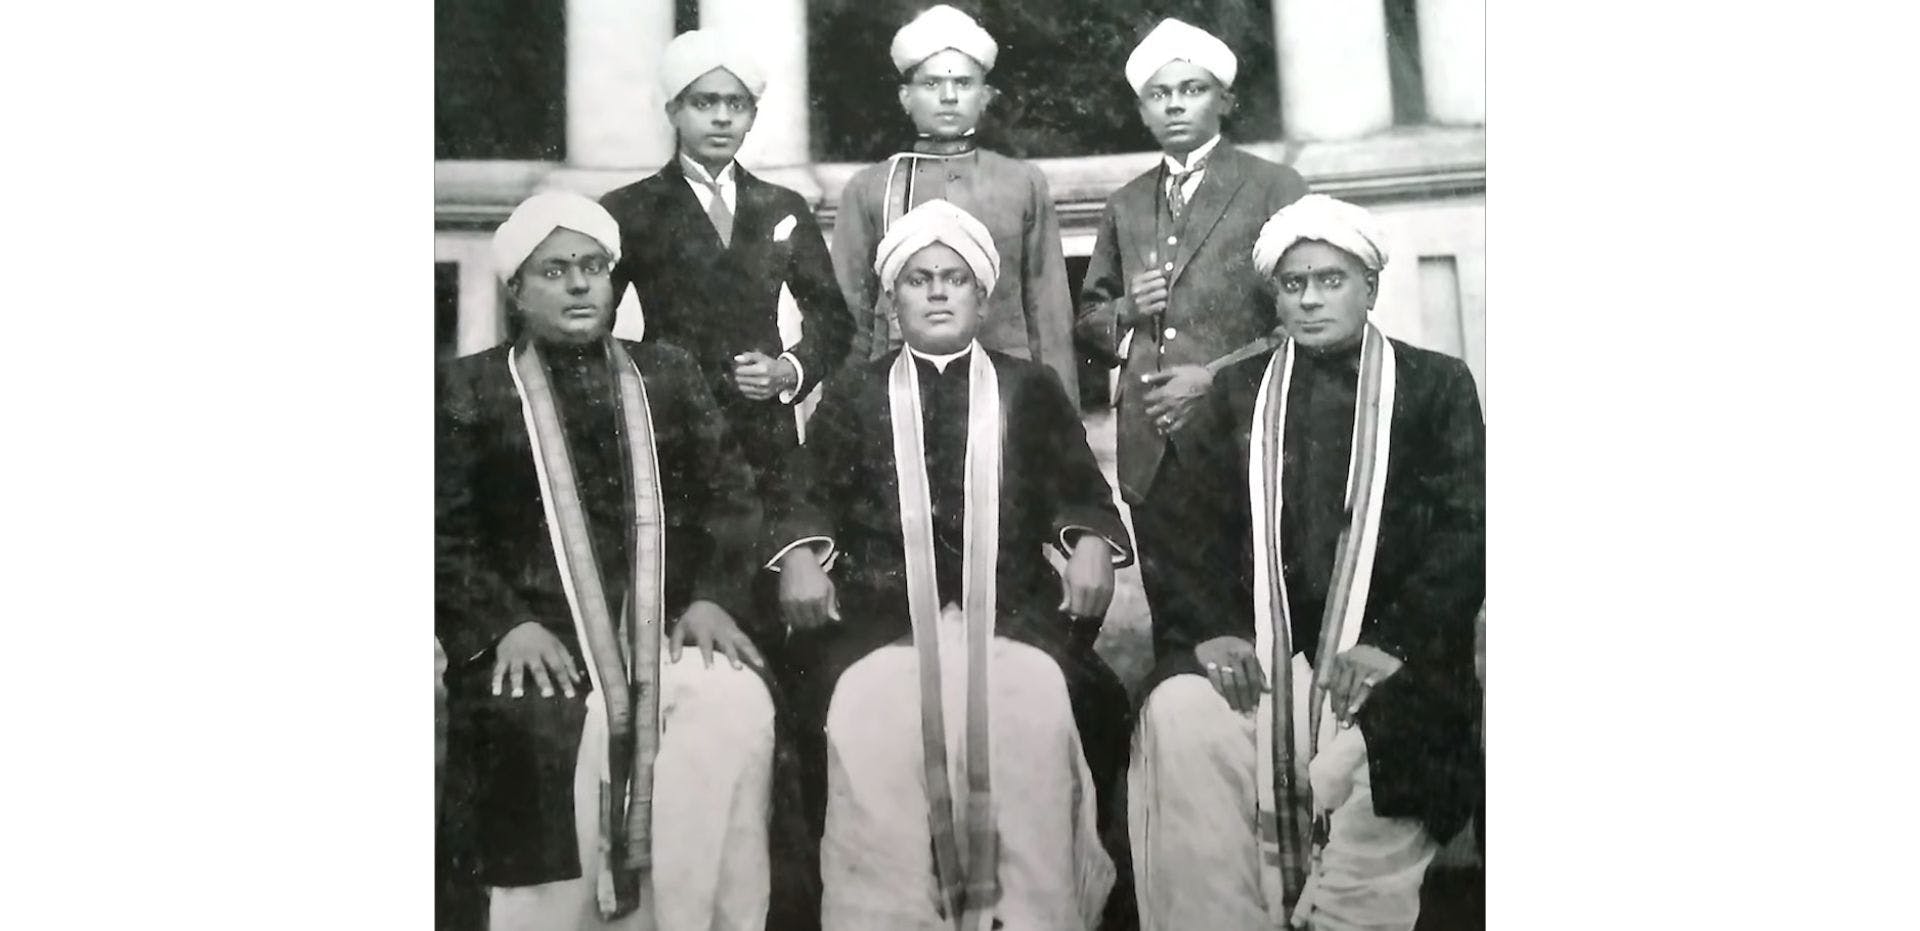 Members of the Nagarathar Chettiar Community